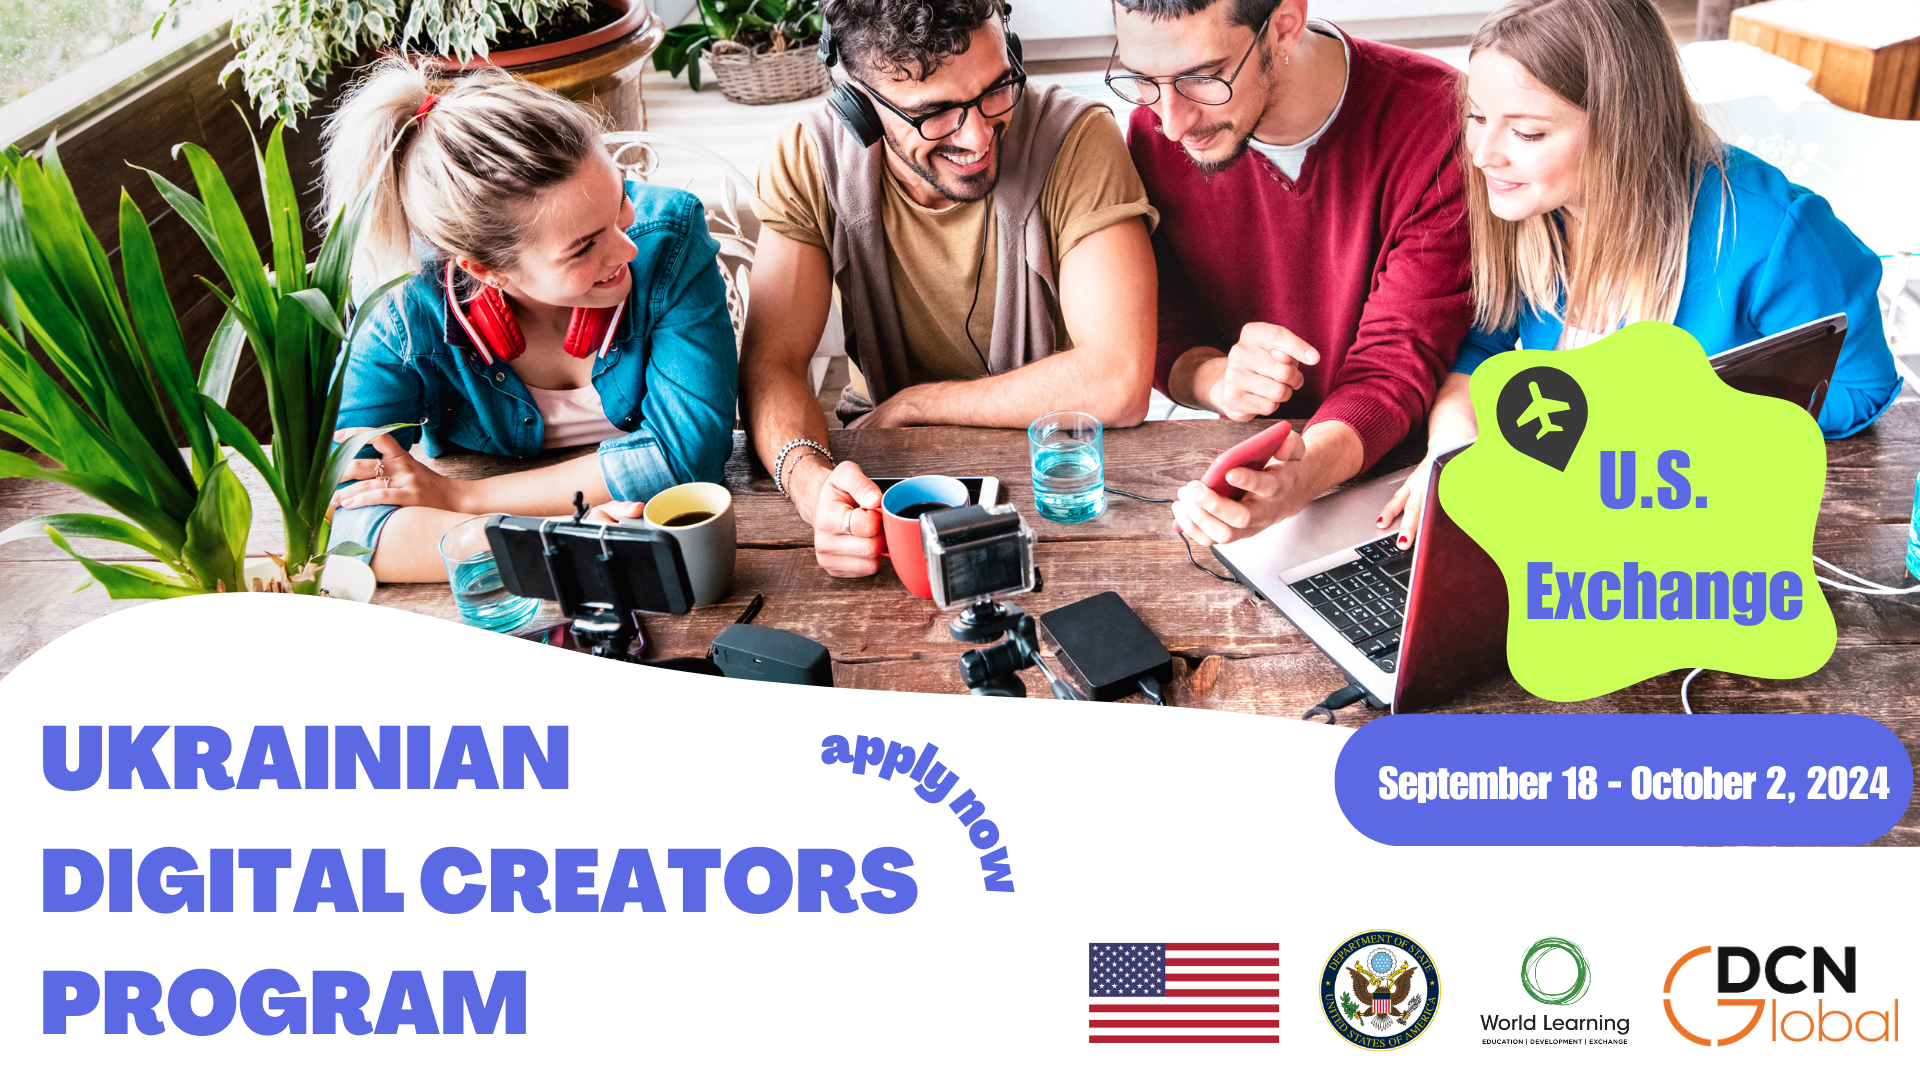 Ukrainian Digital Creators | U.S. Exchange Program (September 18 to October 2, 2024)